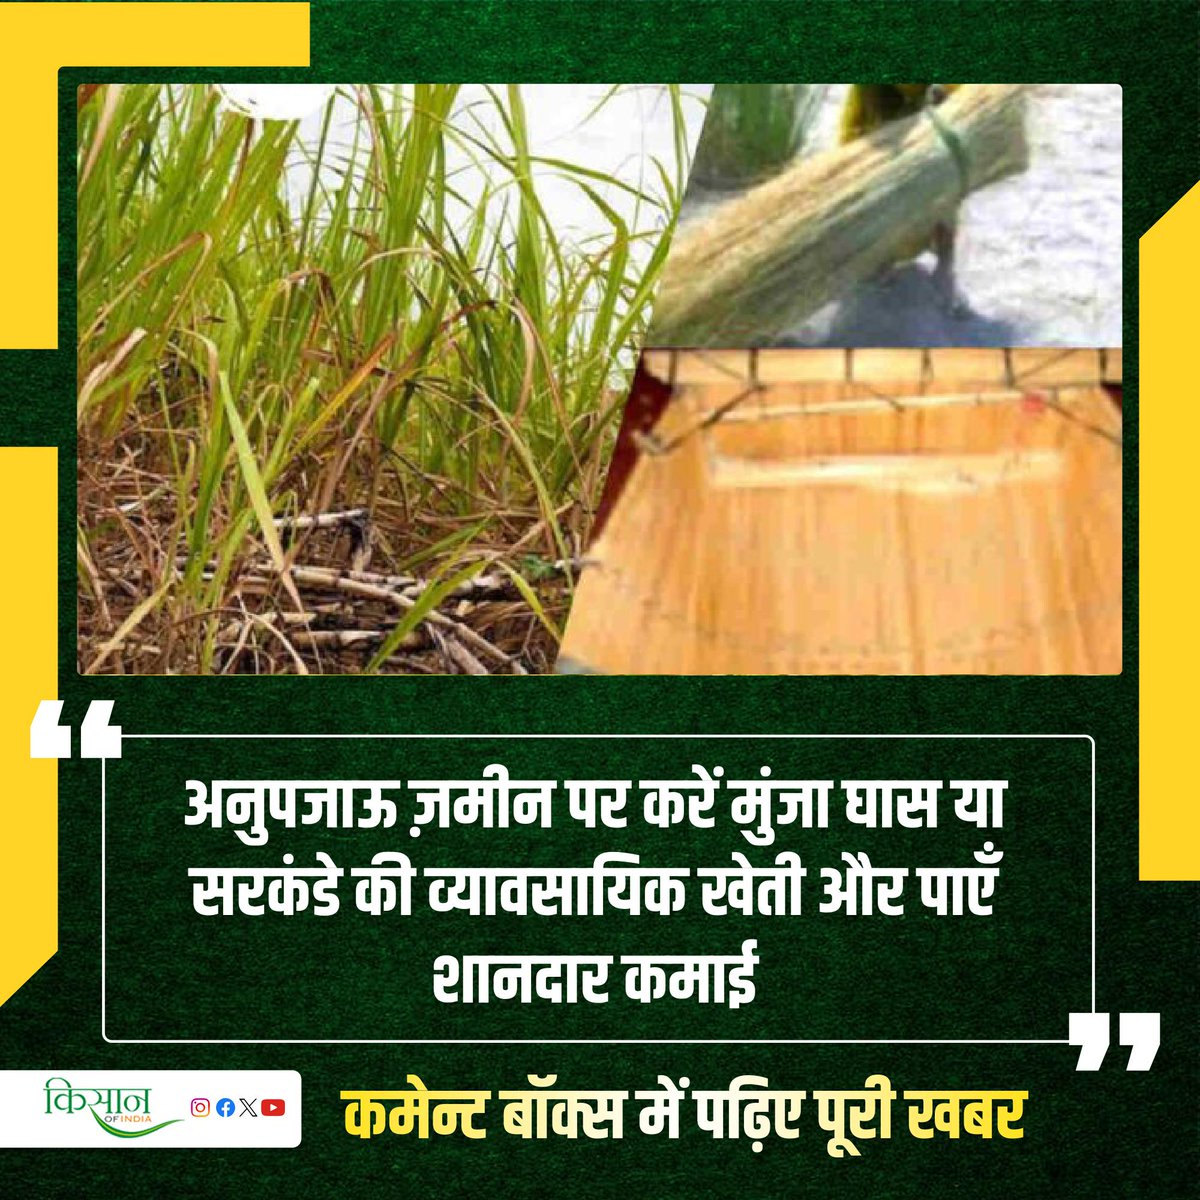 कैसे करें मुंजा घास की वैज्ञानिक खेती? इस खेती के लिए सिंचाई और खाद की ज़रूरत नहीं

#KisanOfIndia #Agriculture #ViralStory #GrassFarming